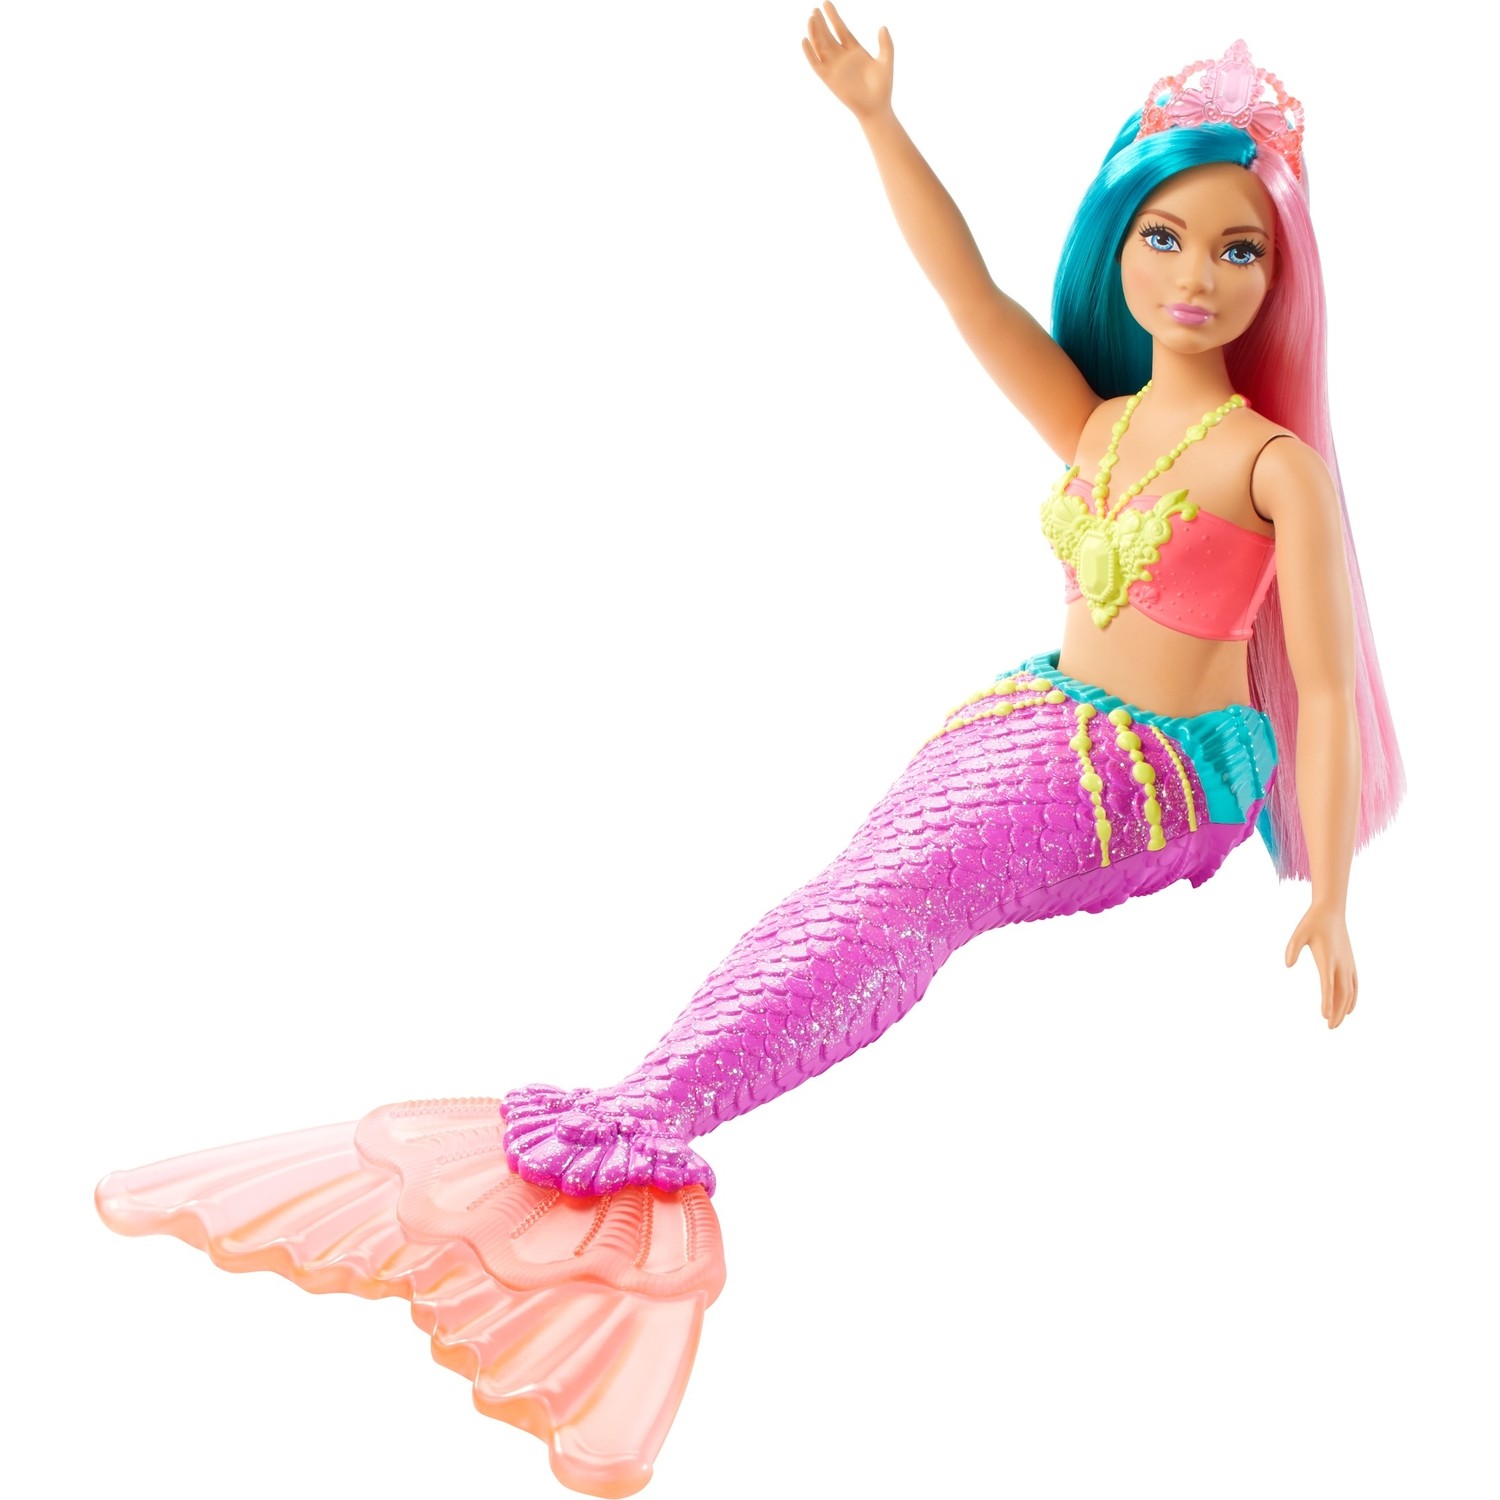 Куклы русалки Barbie Dreamtopia светлая кожа, синие, розовые волосы GJK11 куклы barbie русалки dreamtopia hgr09